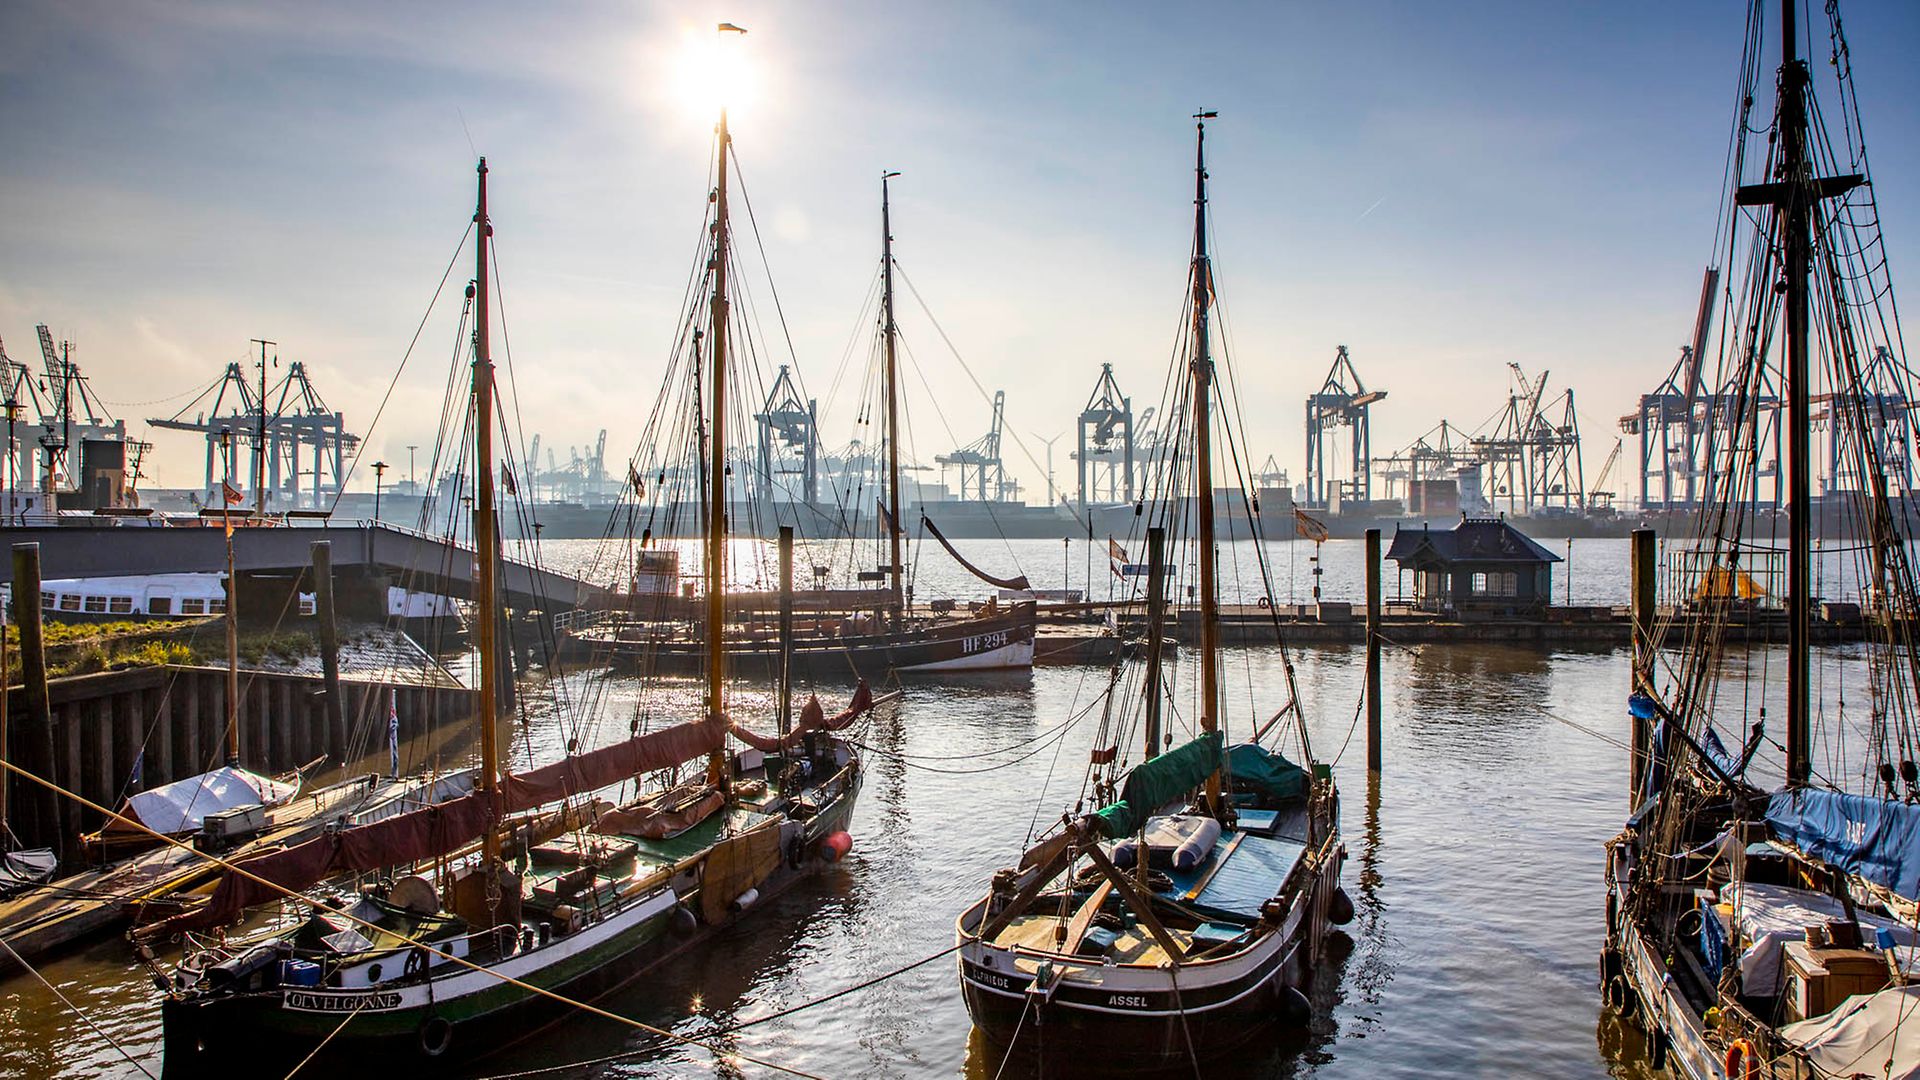  Alte Schiffe liegen im Wasser, im Hintergrund moderne Hafenkrane